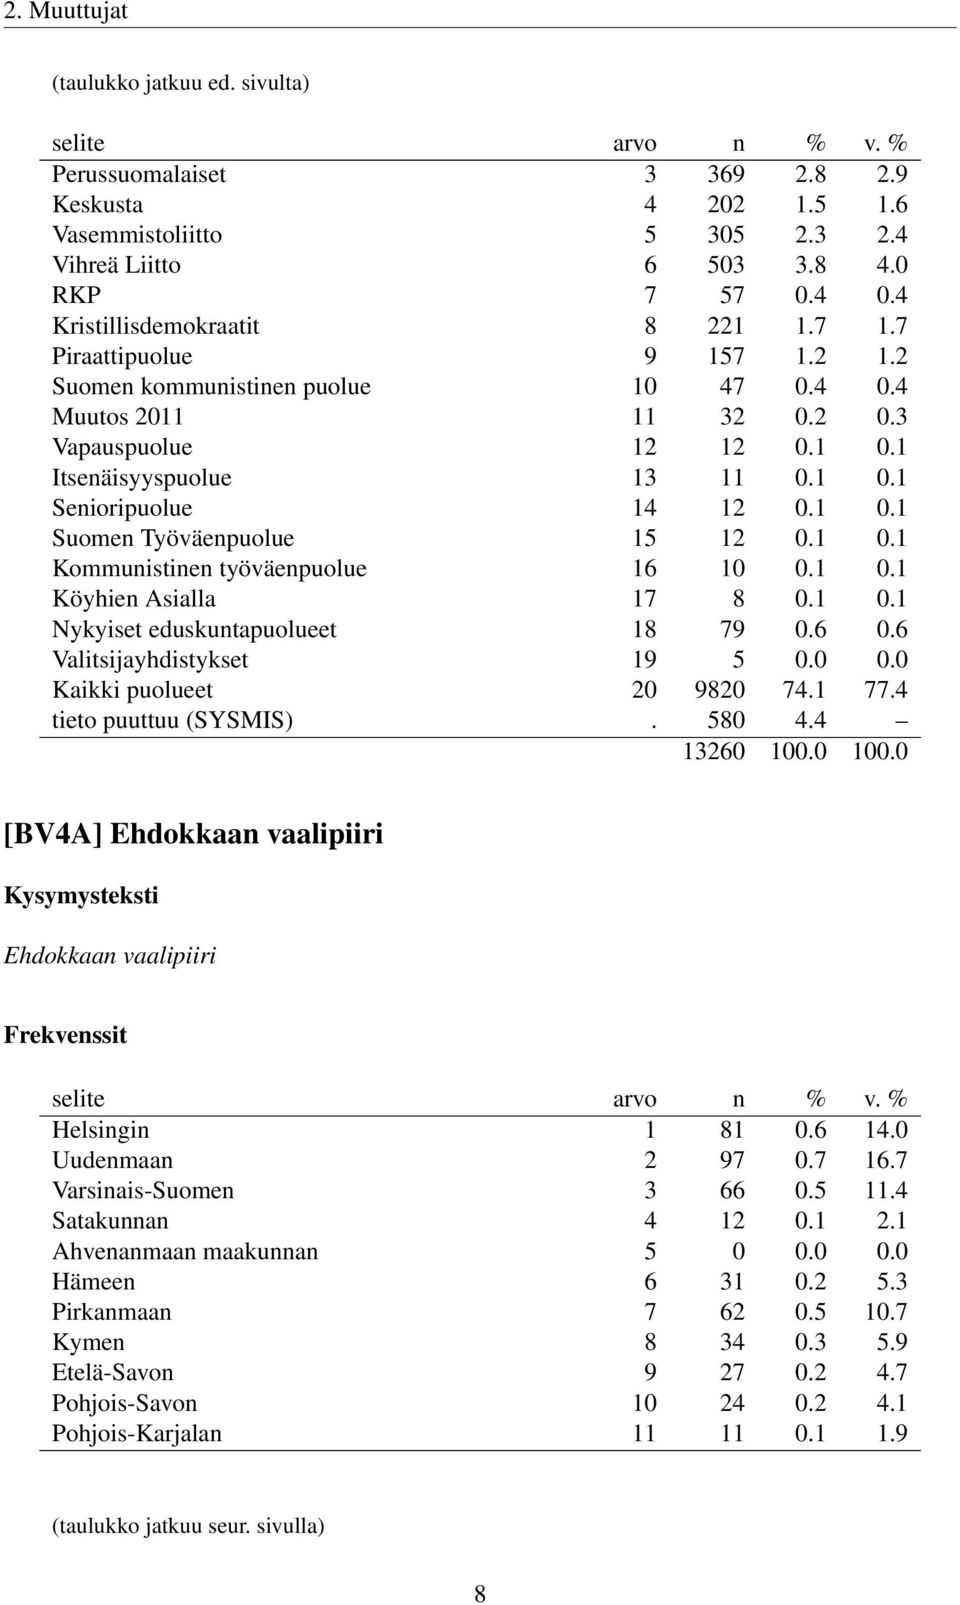 1 0.1 Suomen Työväenpuolue 15 12 0.1 0.1 Kommunistinen työväenpuolue 16 10 0.1 0.1 Köyhien Asialla 17 8 0.1 0.1 Nykyiset eduskuntapuolueet 18 79 0.6 0.6 Valitsijayhdistykset 19 5 0.0 0.0 Kaikki puolueet 20 9820 74.